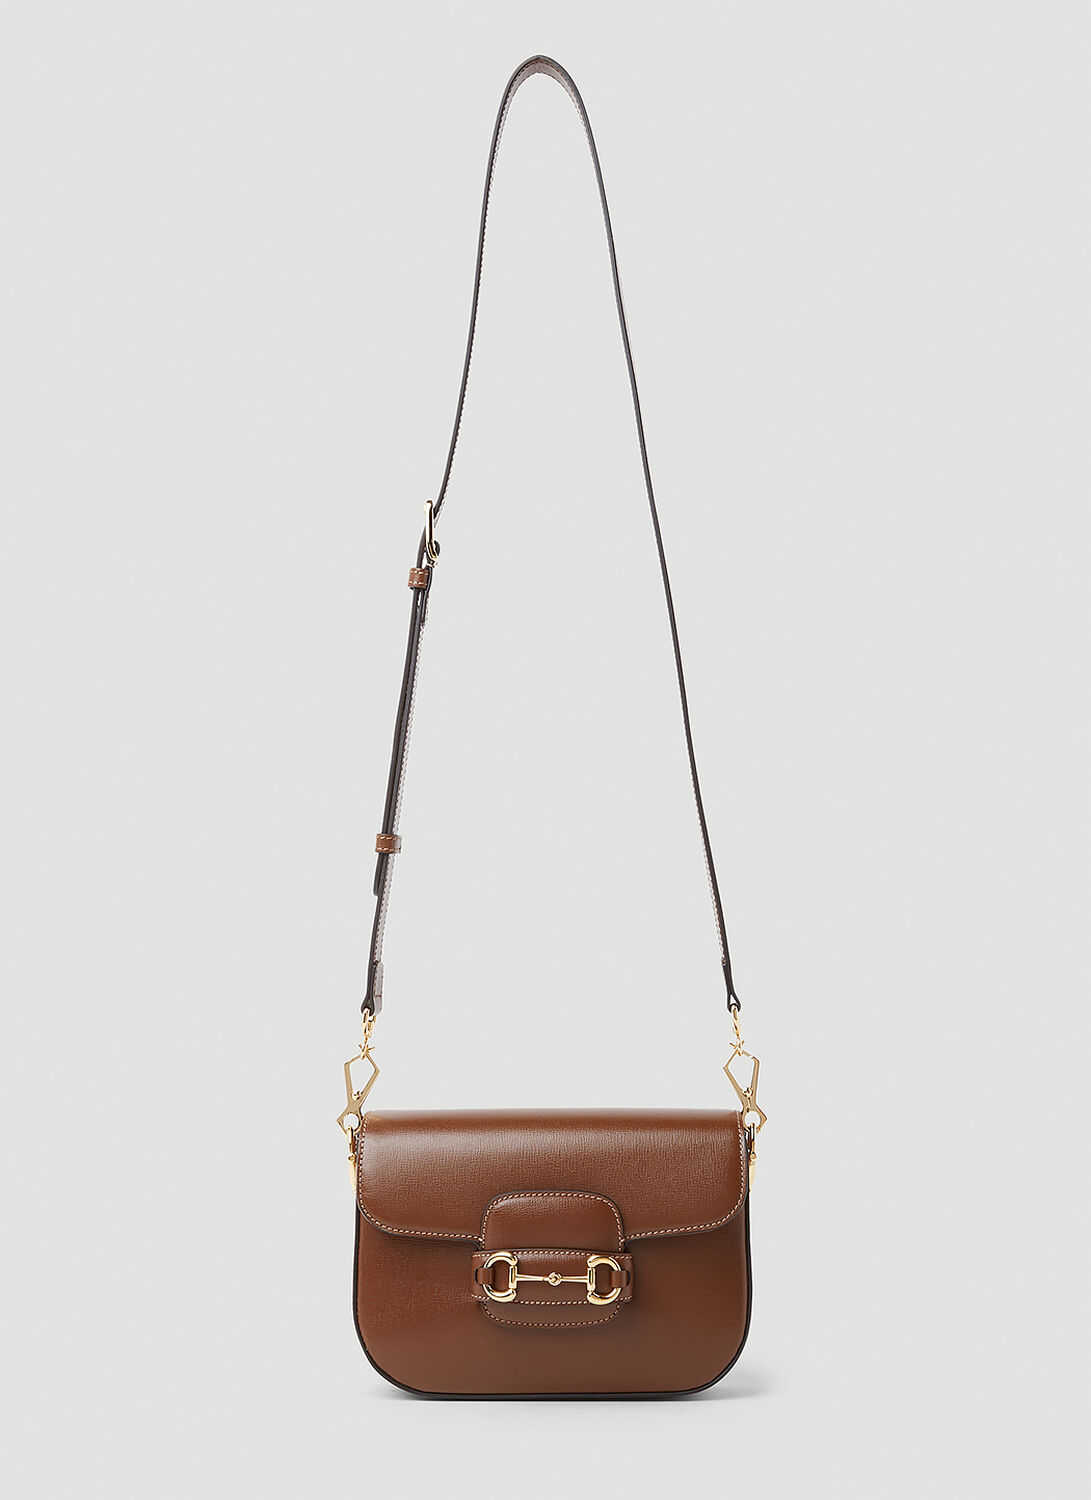 Gucci Horsebit 1955 Mini Shoulder Bag In Brown